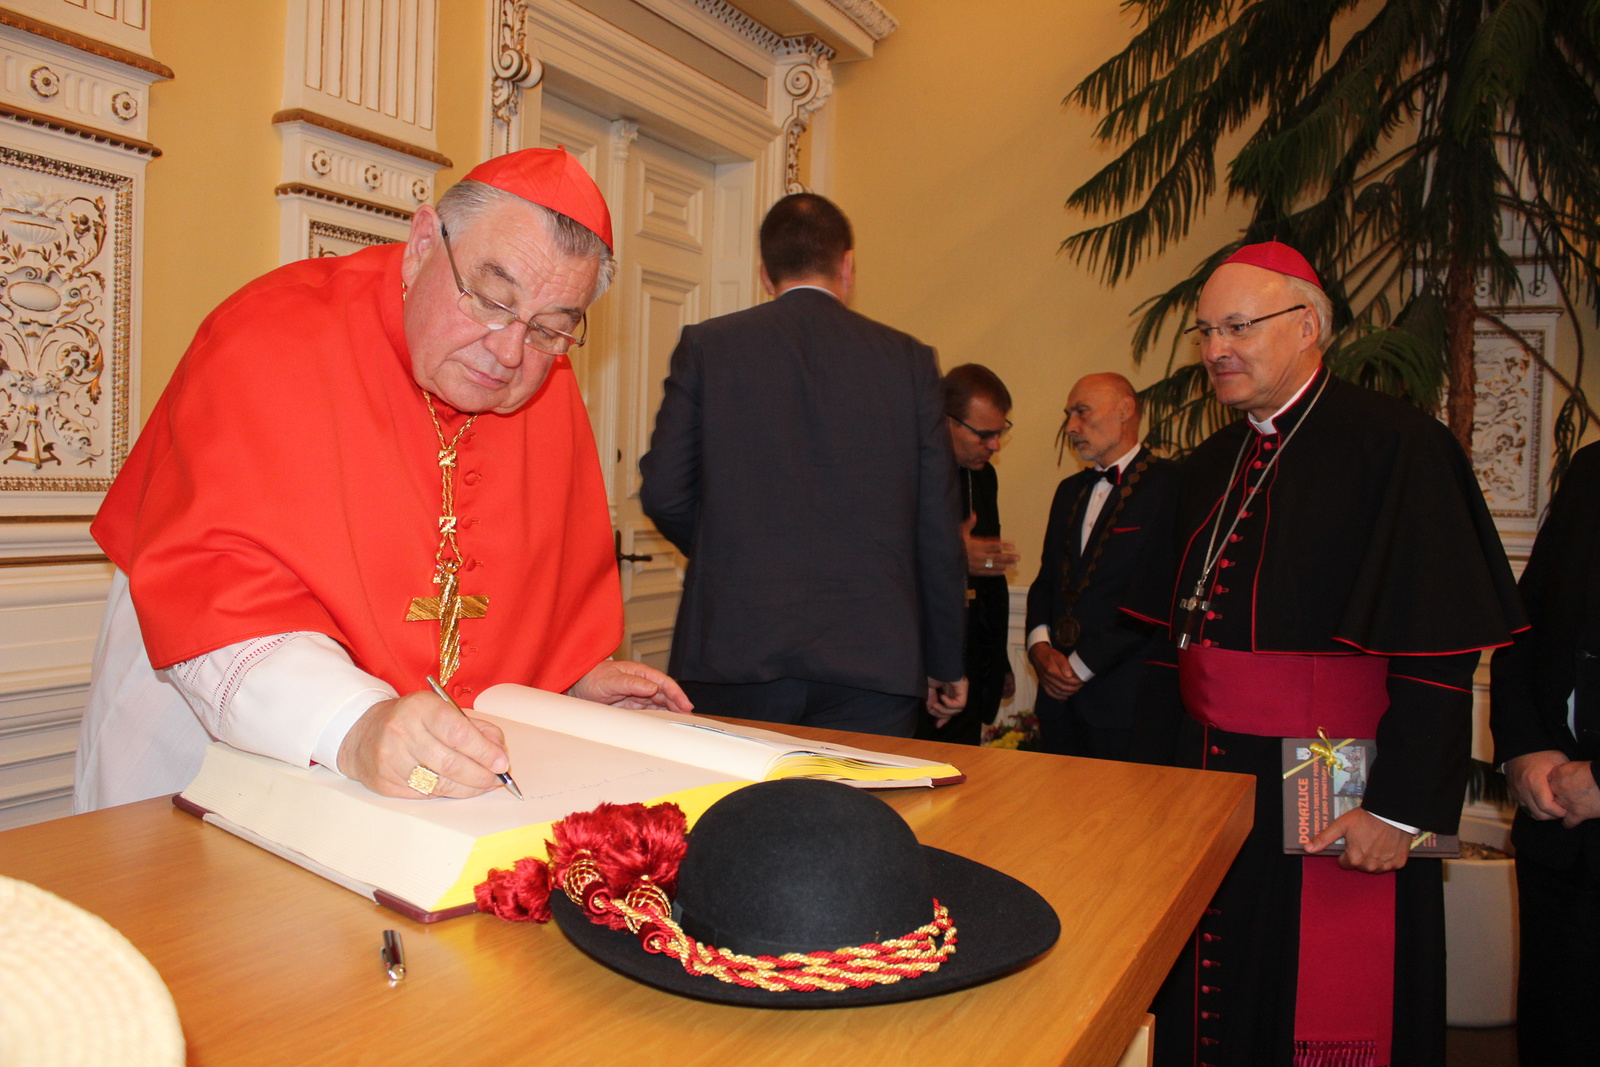 FOTO, VIDEO: Chodové slavili. Darem získali klobouk kardinála Duky -  Domažlický deník